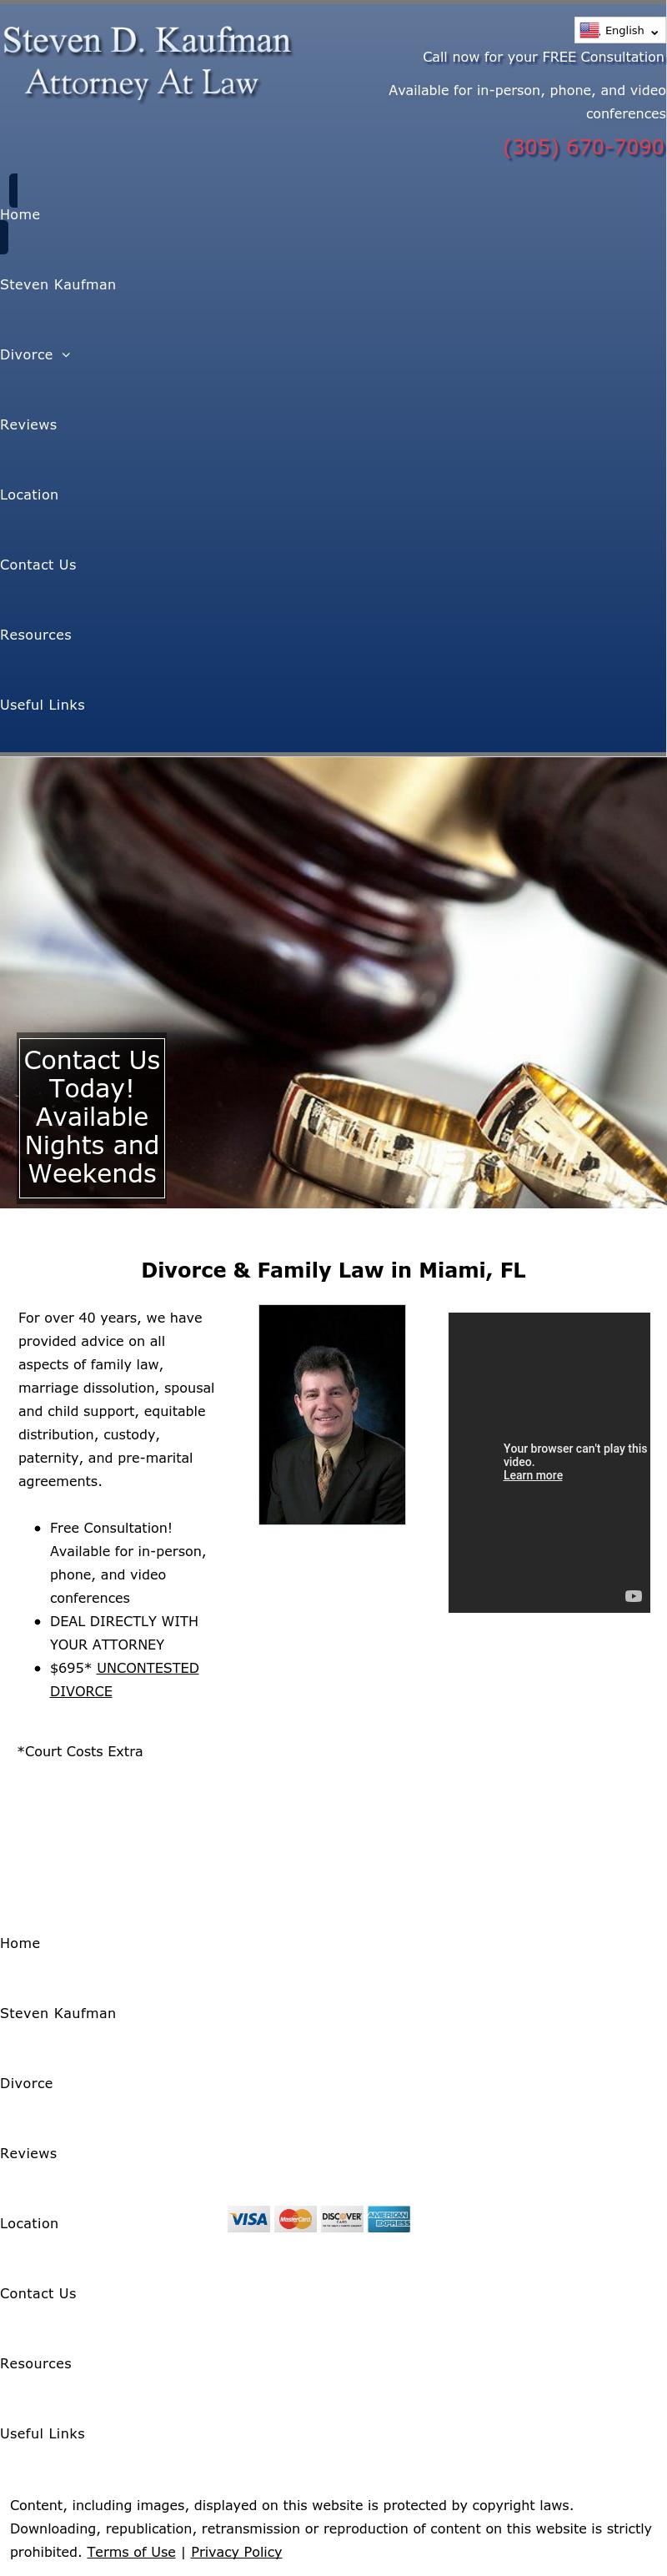 Kaufman, Steven D - Miami FL Lawyers